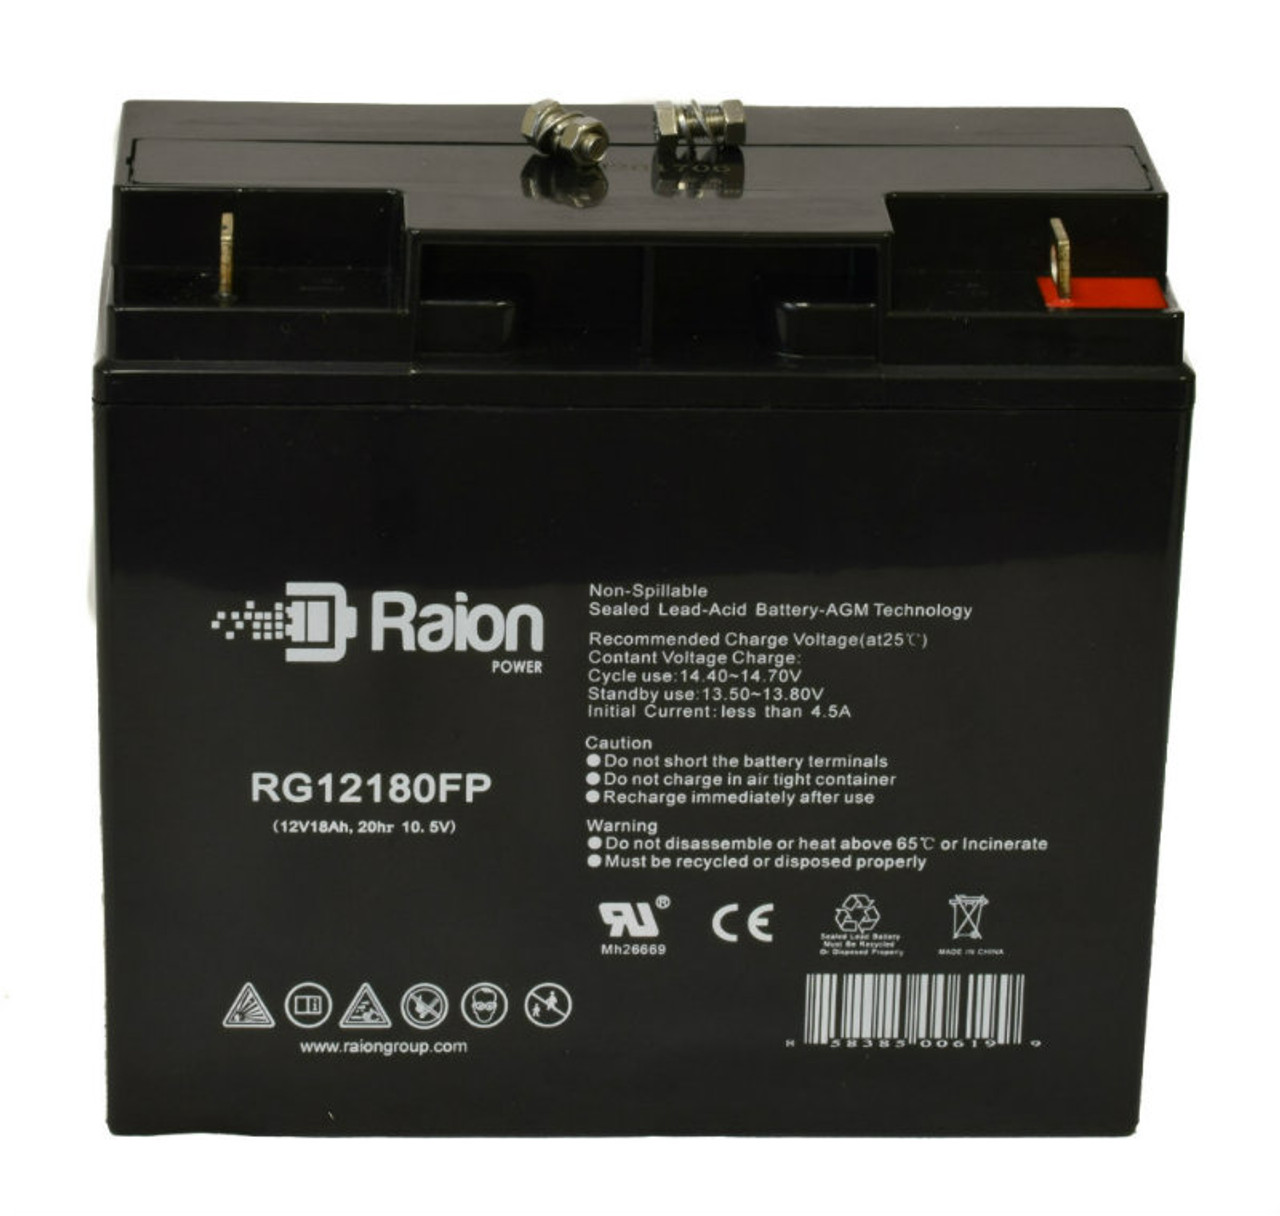 Raion Power RG12180FP 12V 18Ah Lead Acid Battery for Tempest TR18-12